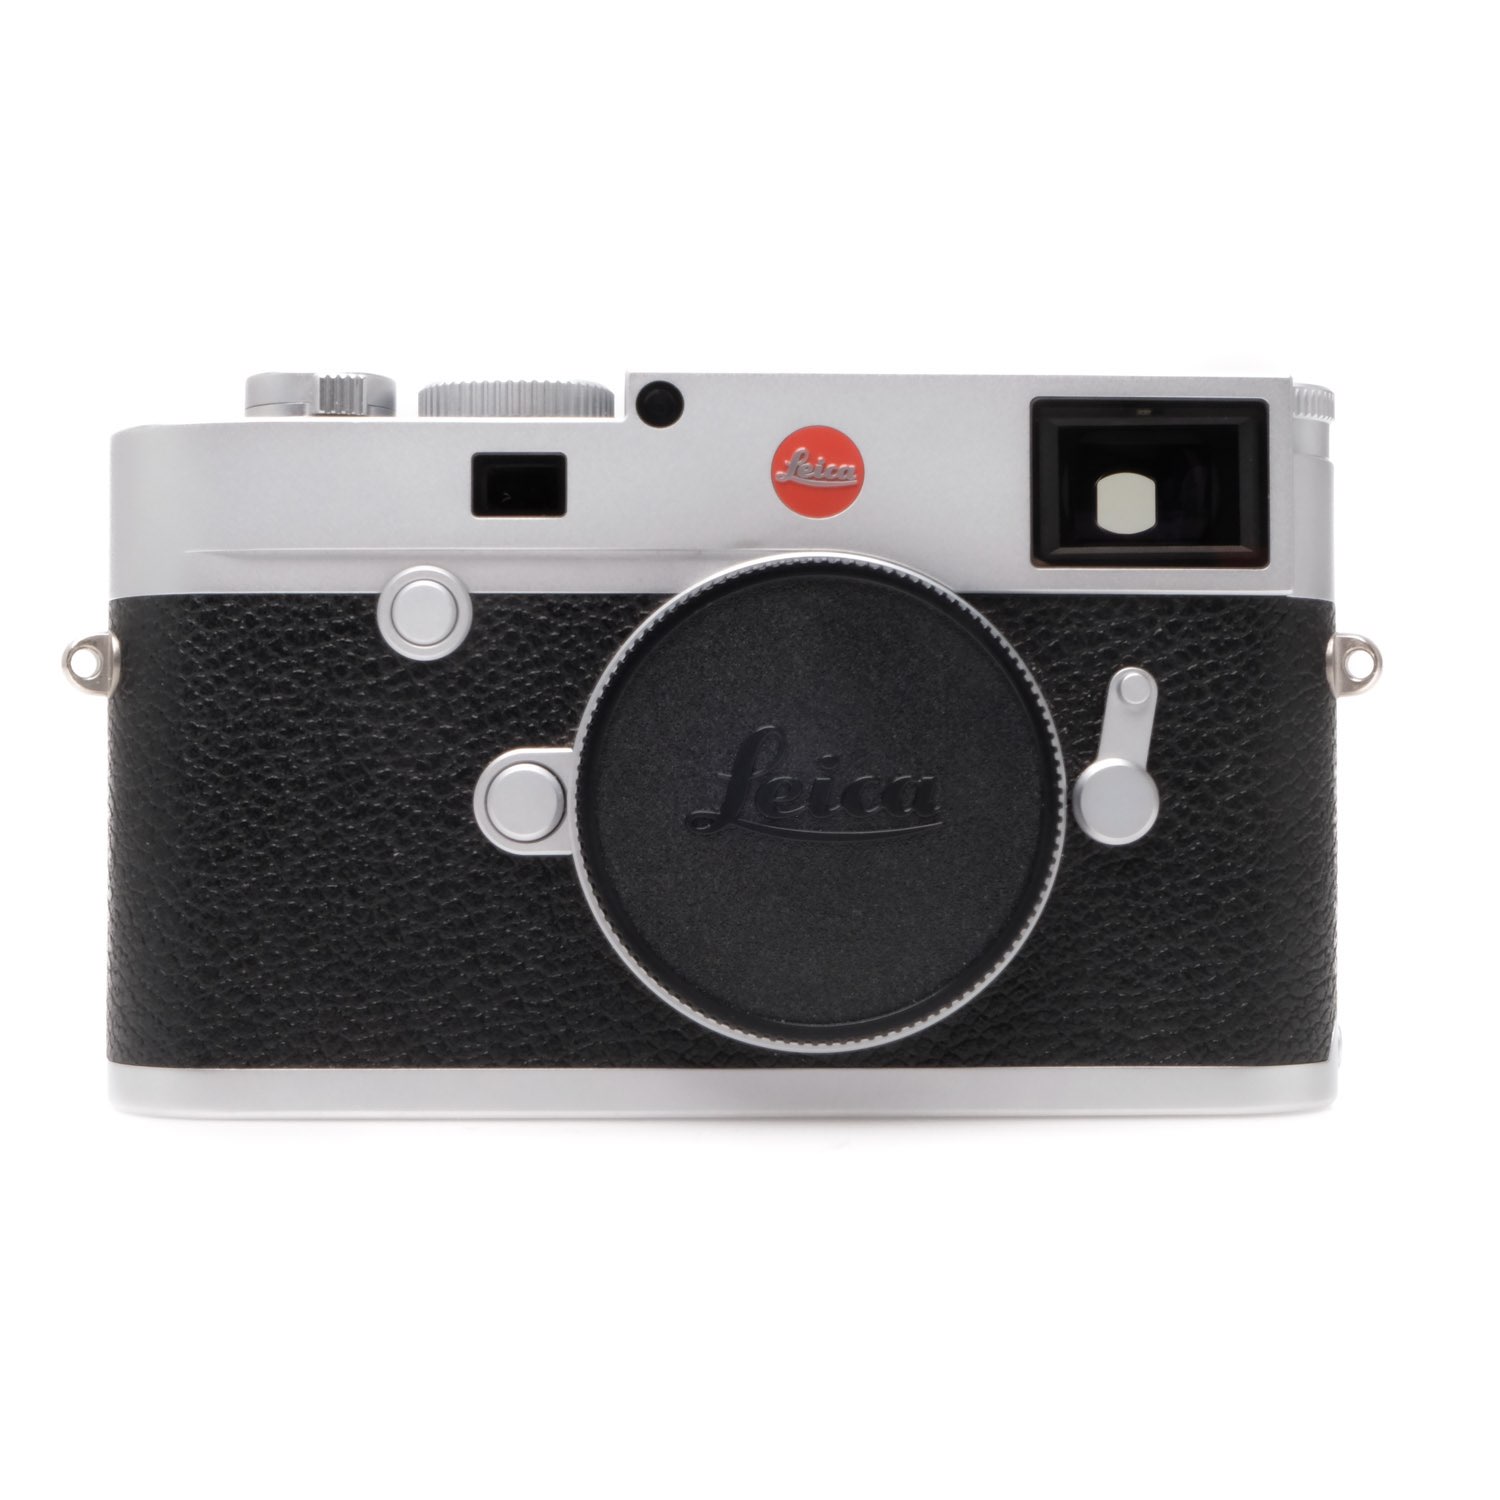 Leica M10 Silver  5256995